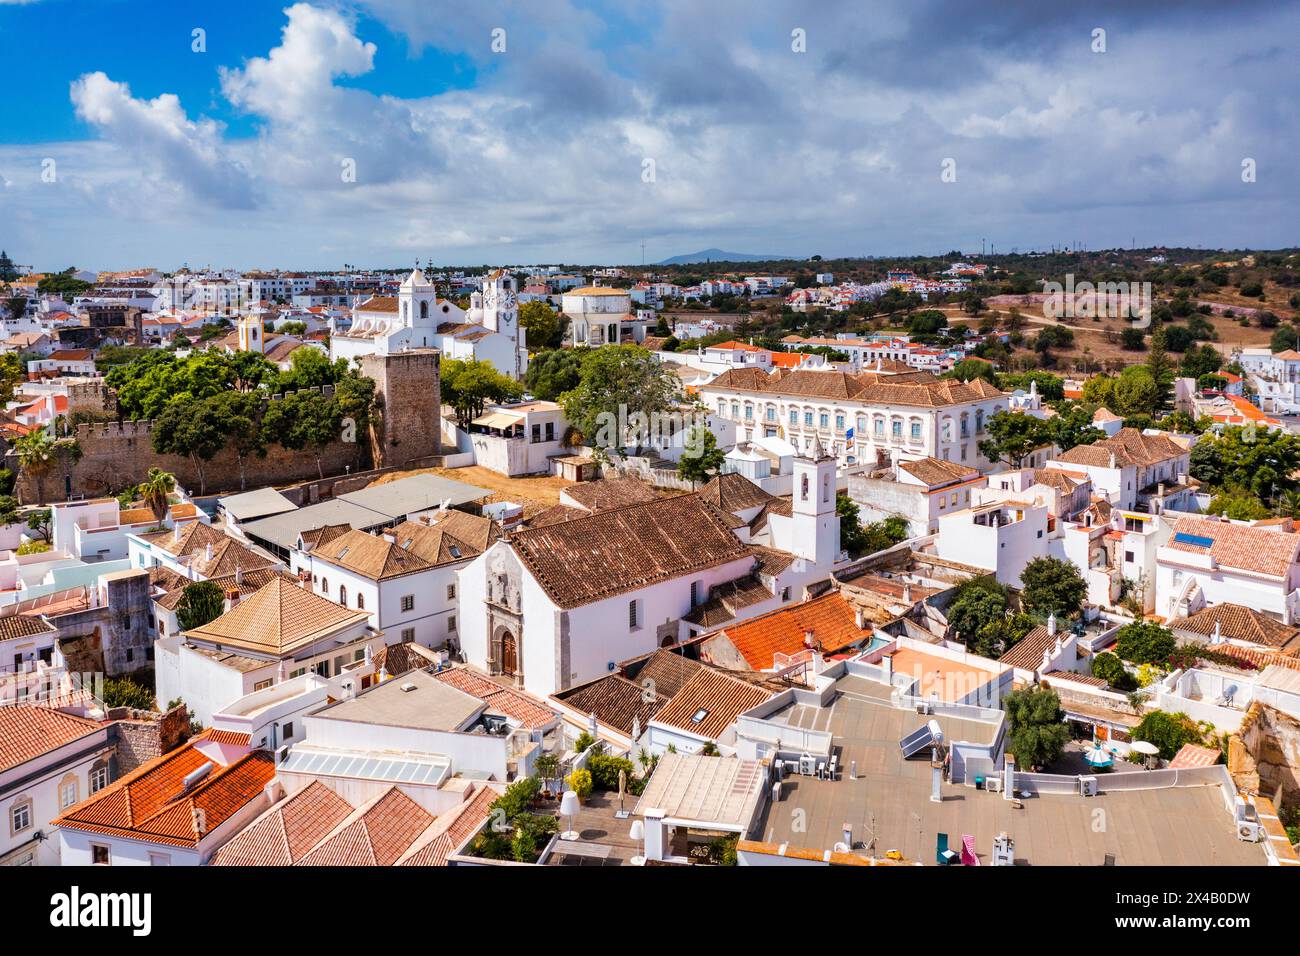 Blick auf die historische Stadt Tavira mit römischer Brücke über den Fluss Gilao, Algarve, Portugal. Stadtbild der Altstadt von Tavira mit Uhrturm, St. Marys Chu Stockfoto